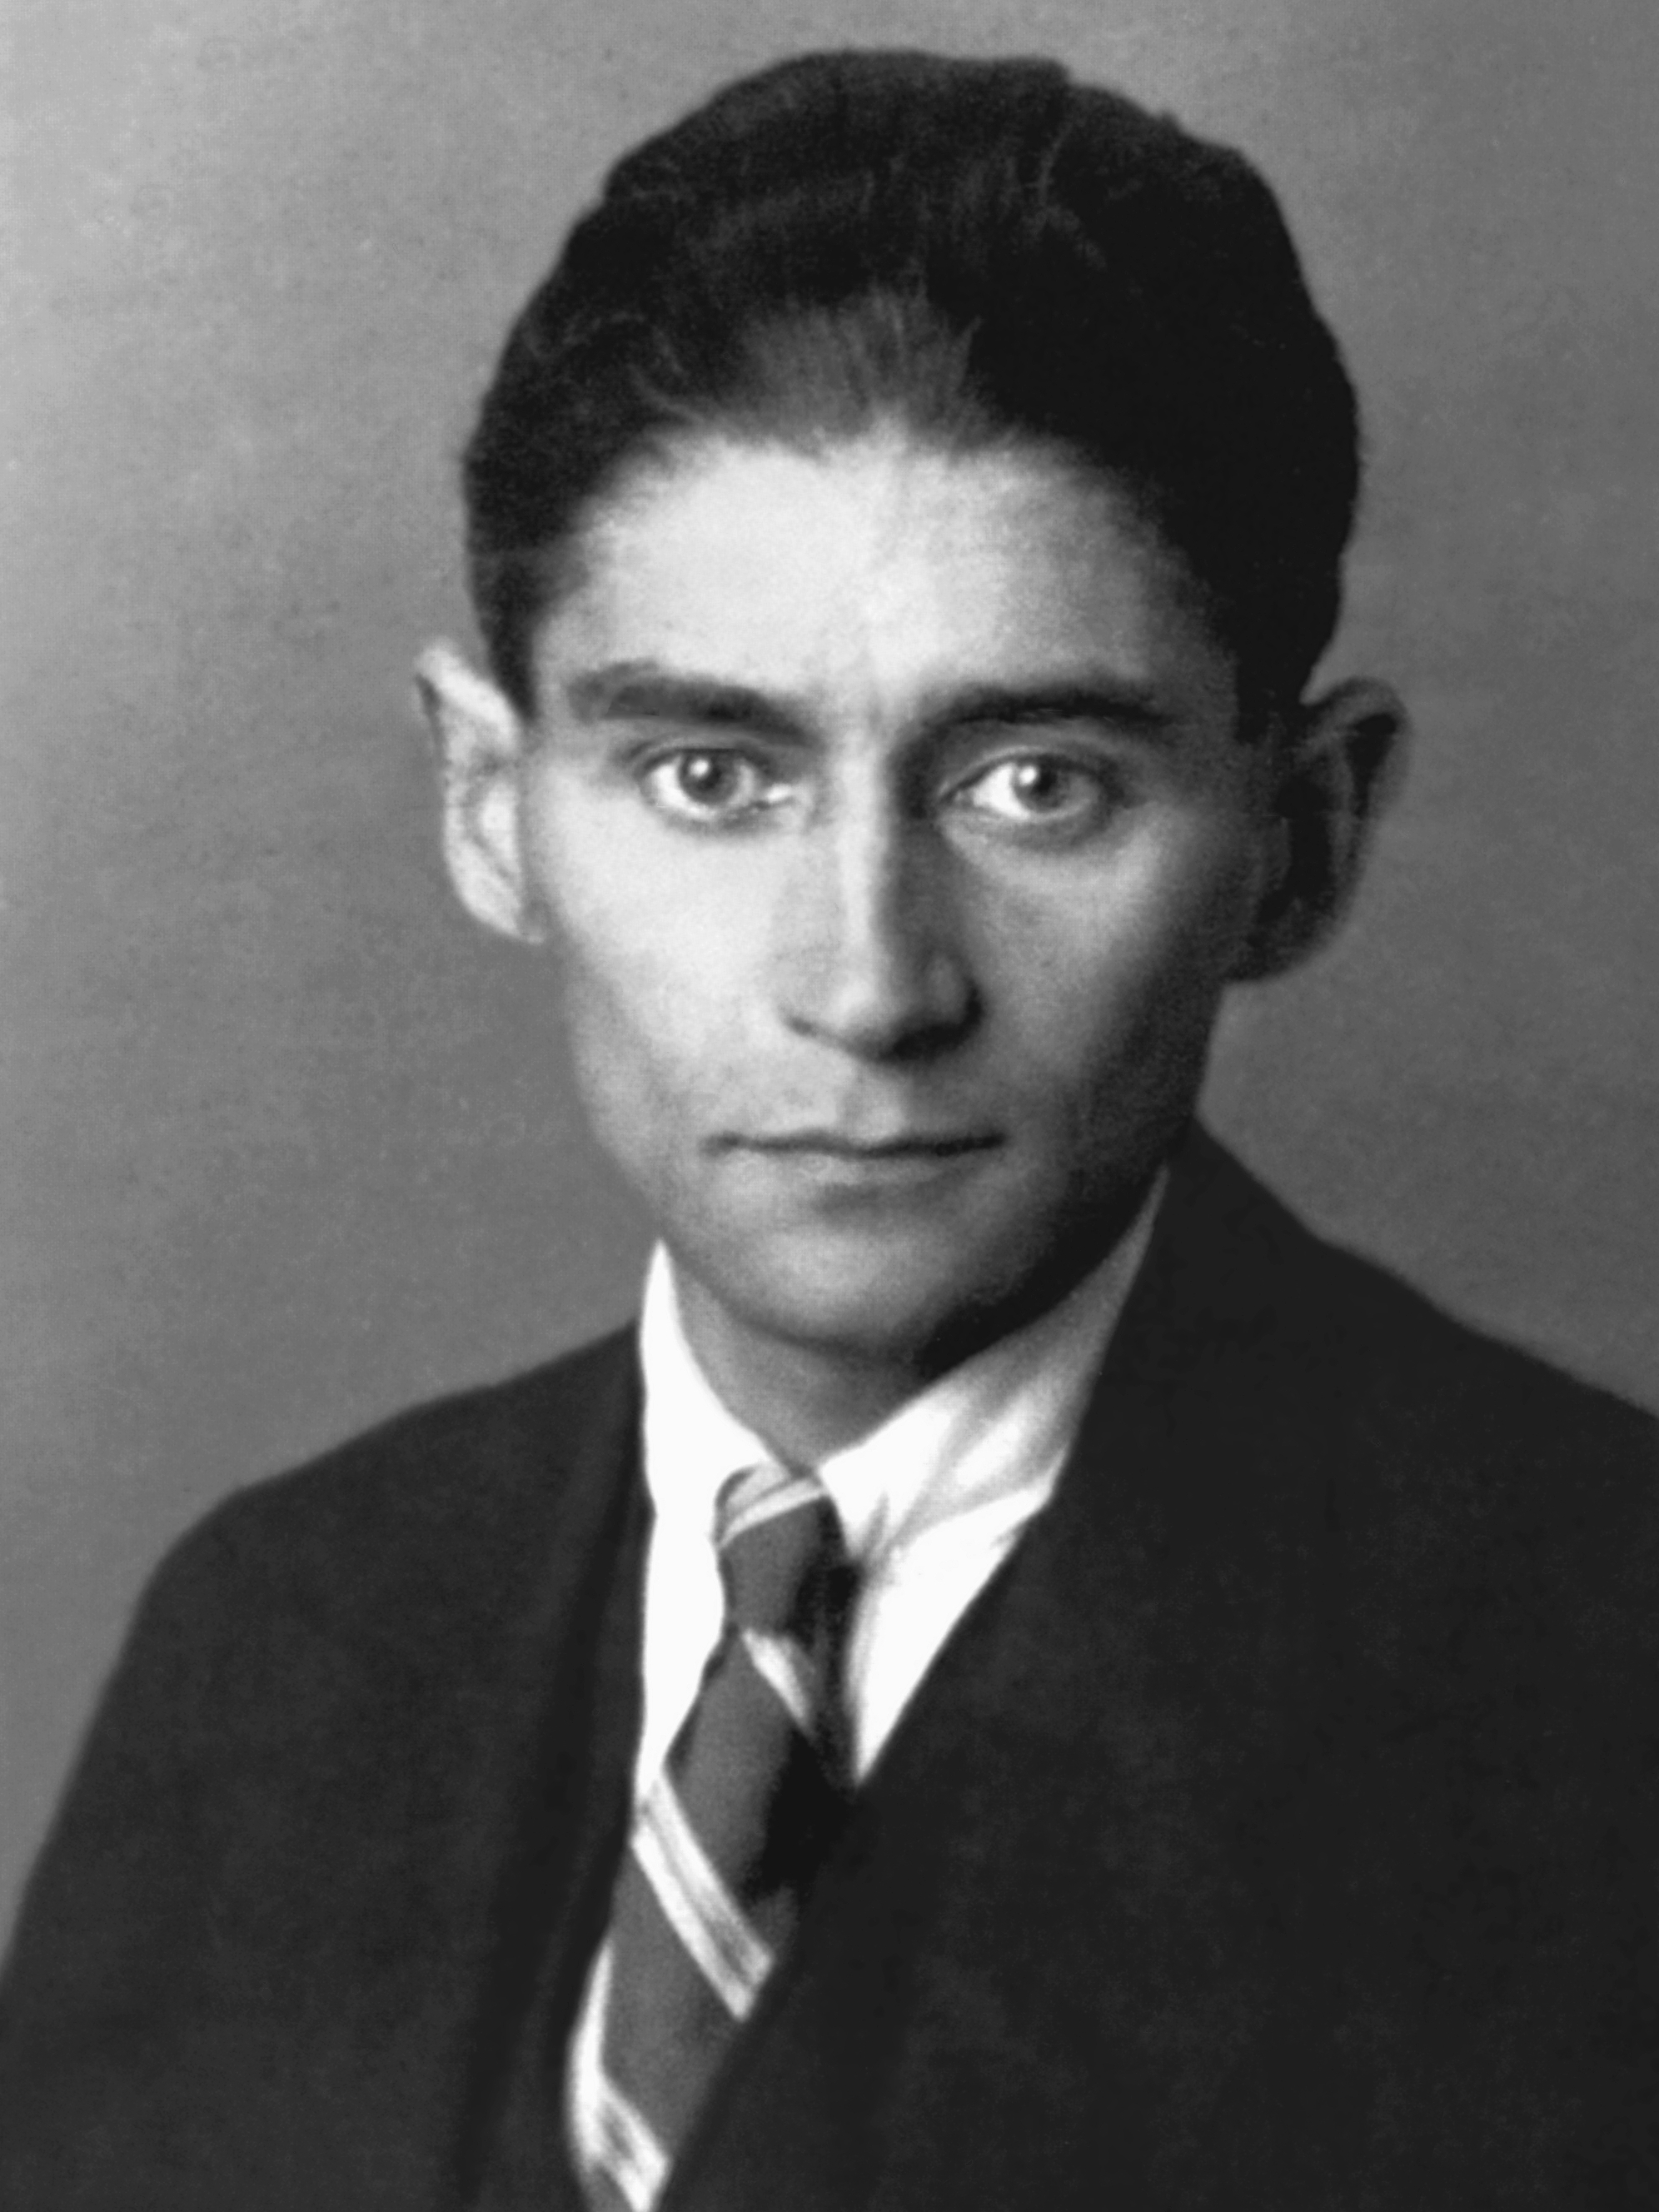 auteur Franz Kafka de la citation Chacun de nous a sa propre façon de sortir des enfers, le mien est en écrivant. C'est pourquoi la seule façon de continuer, voire pas du tout, est d'écrire, pas de repos et de sommeil. Je suis beaucoup plus susceptible de réaliser la tranquillité d'esprit par l'écriture que la capacité d'écrire par la paix.